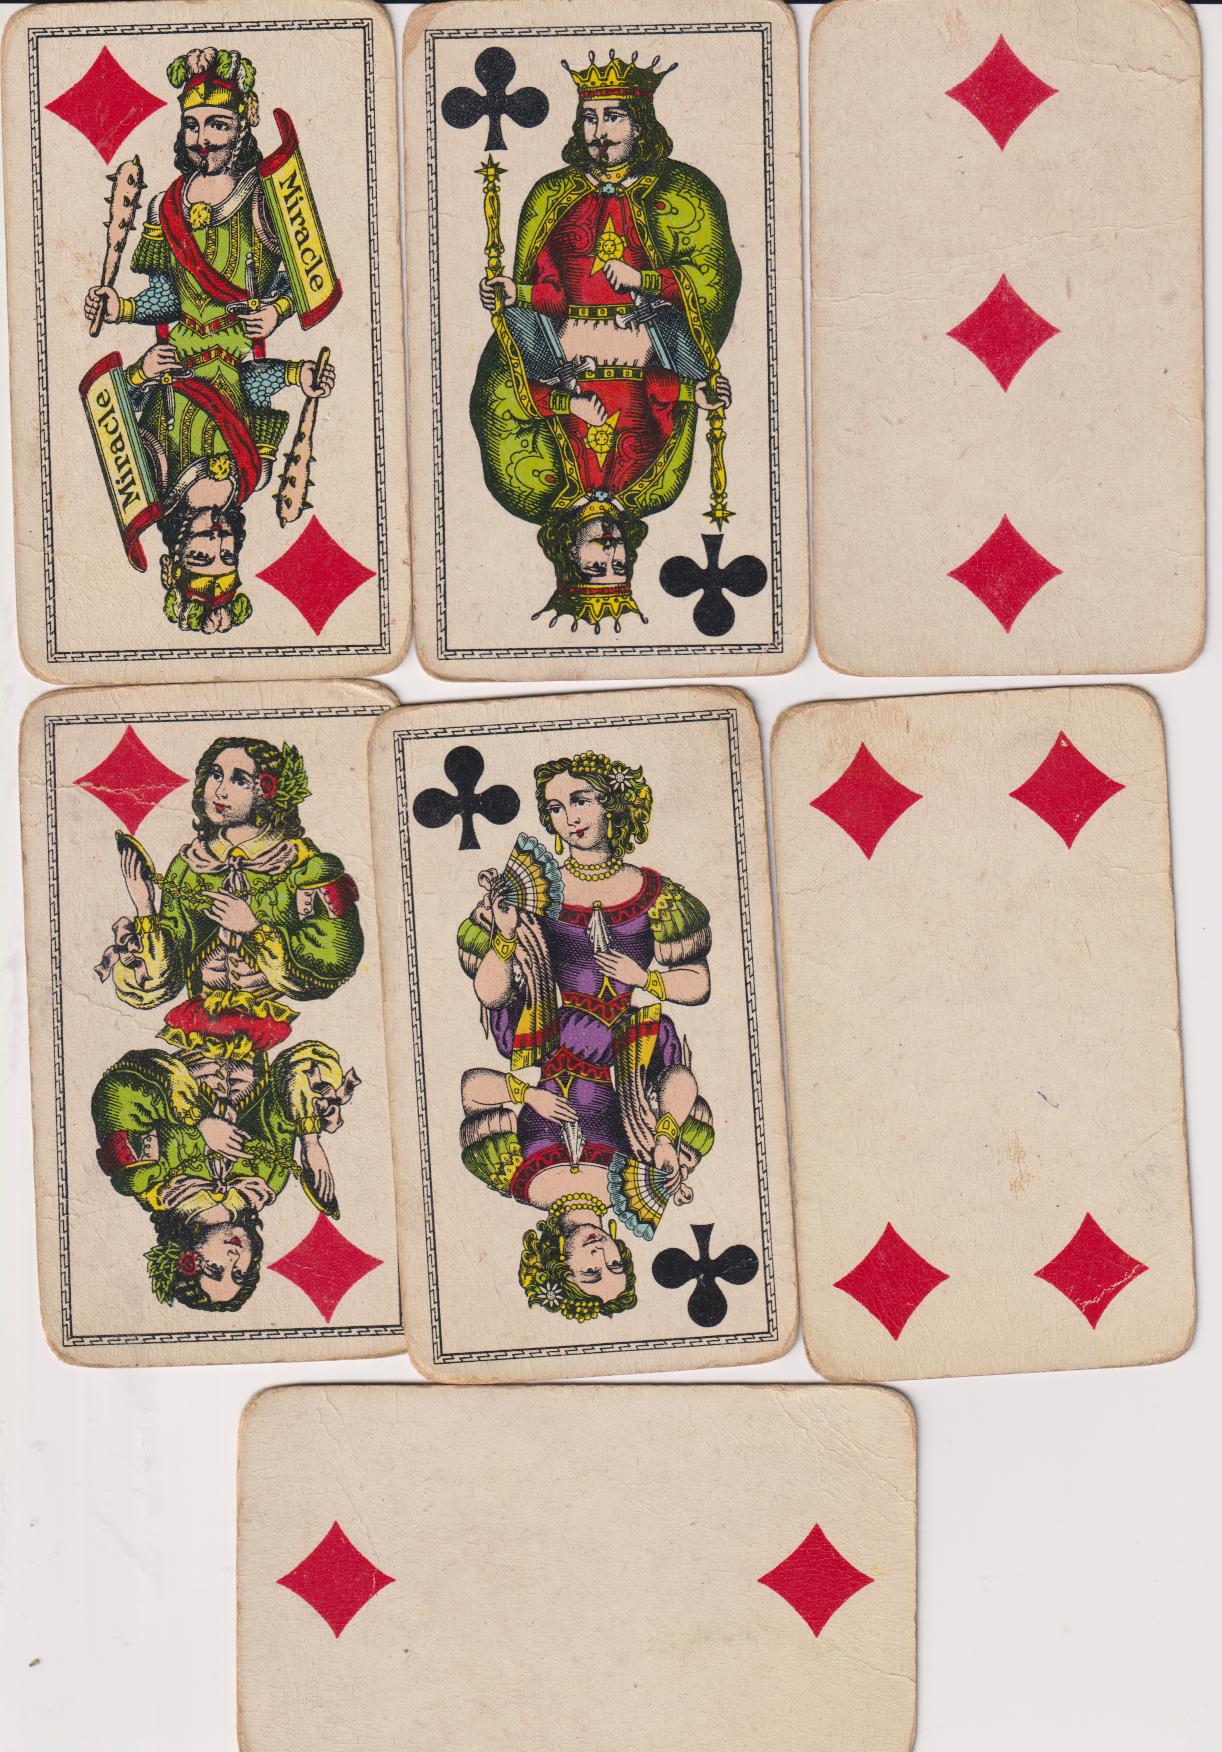 Lote de 7 cartas (11,5x7) de Miraklin